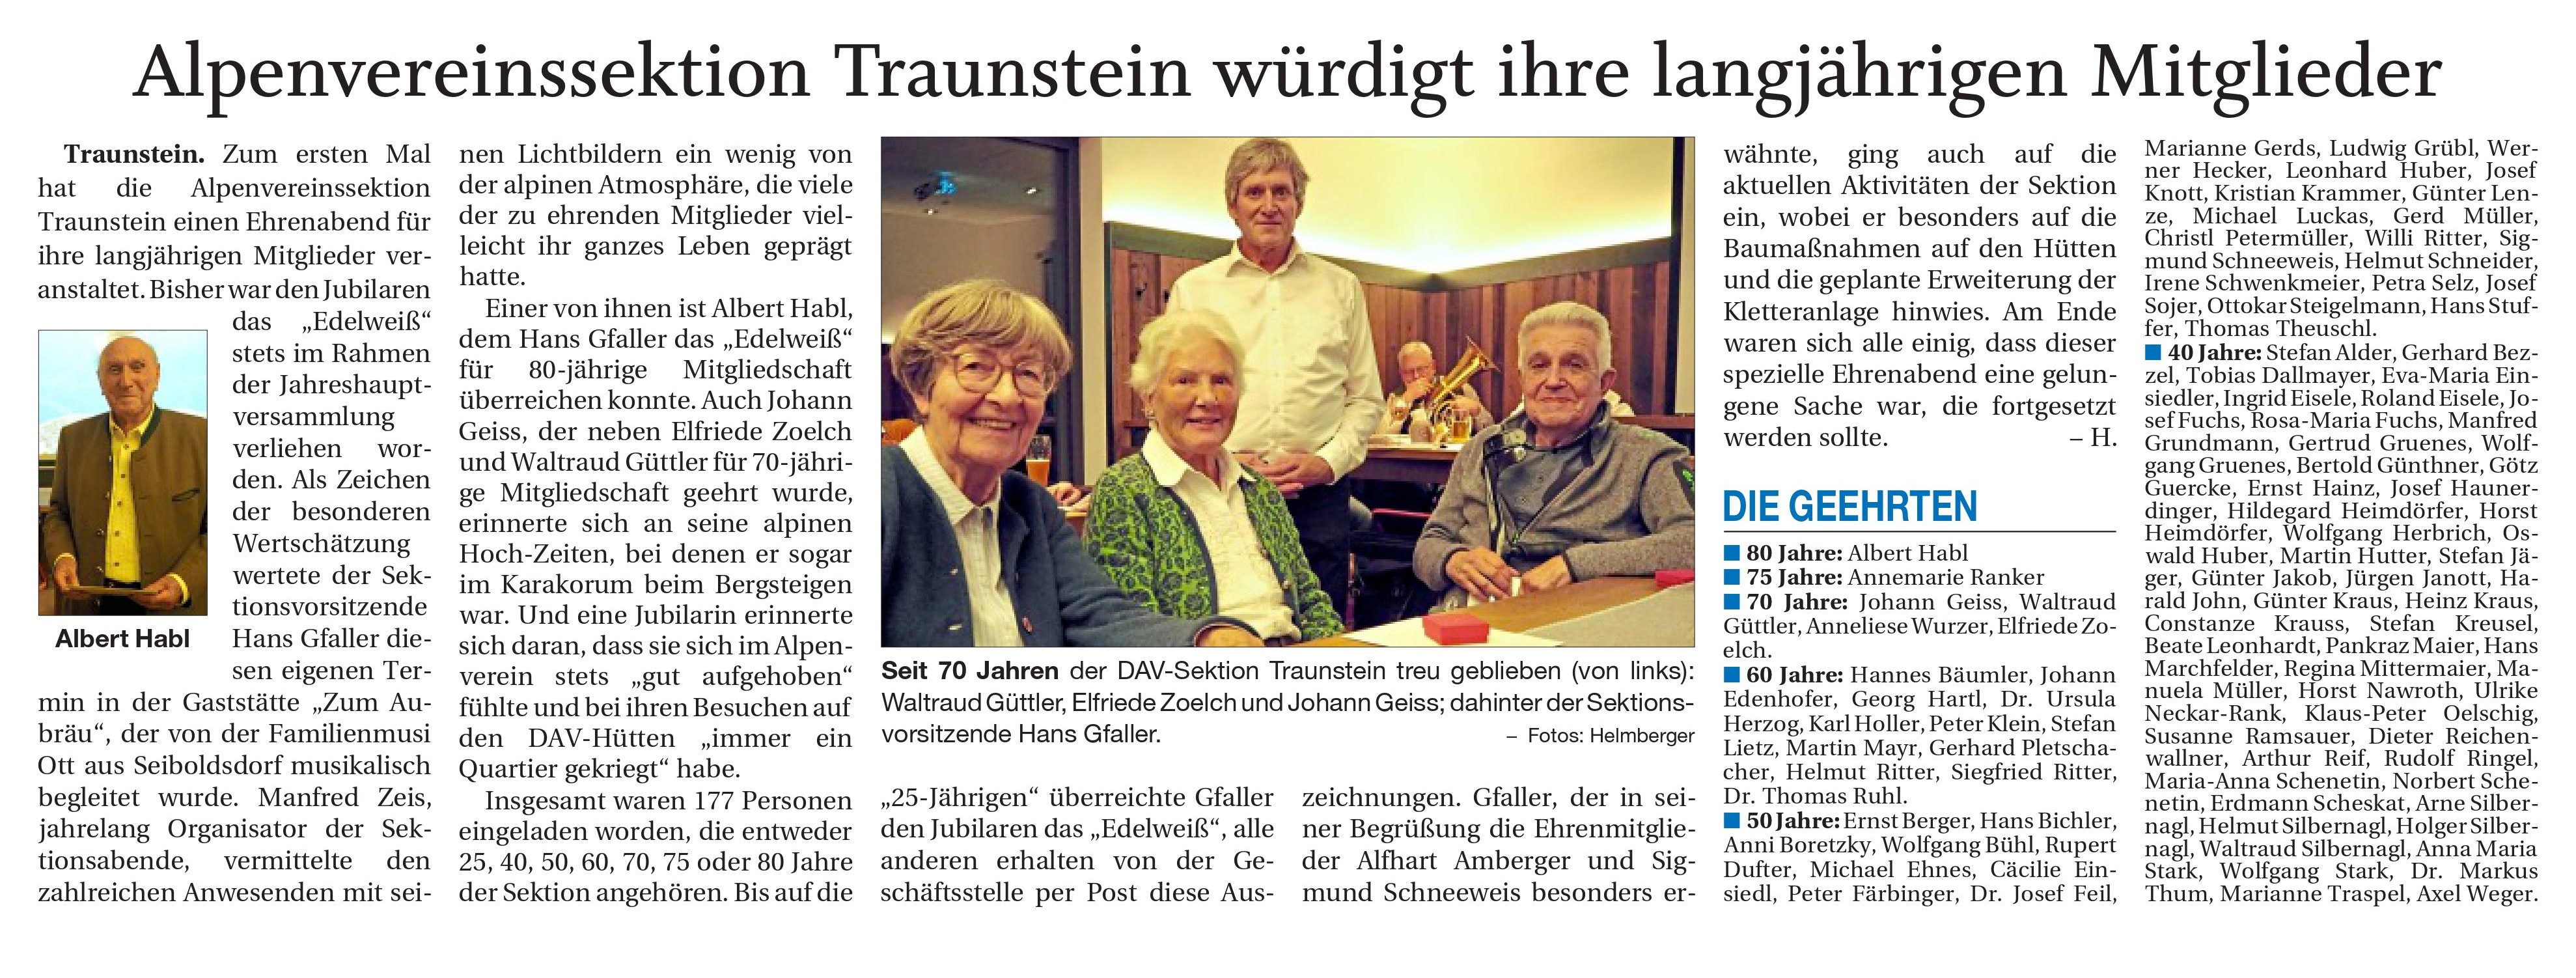 Ehrenabend Traunsteiner Tagblatt